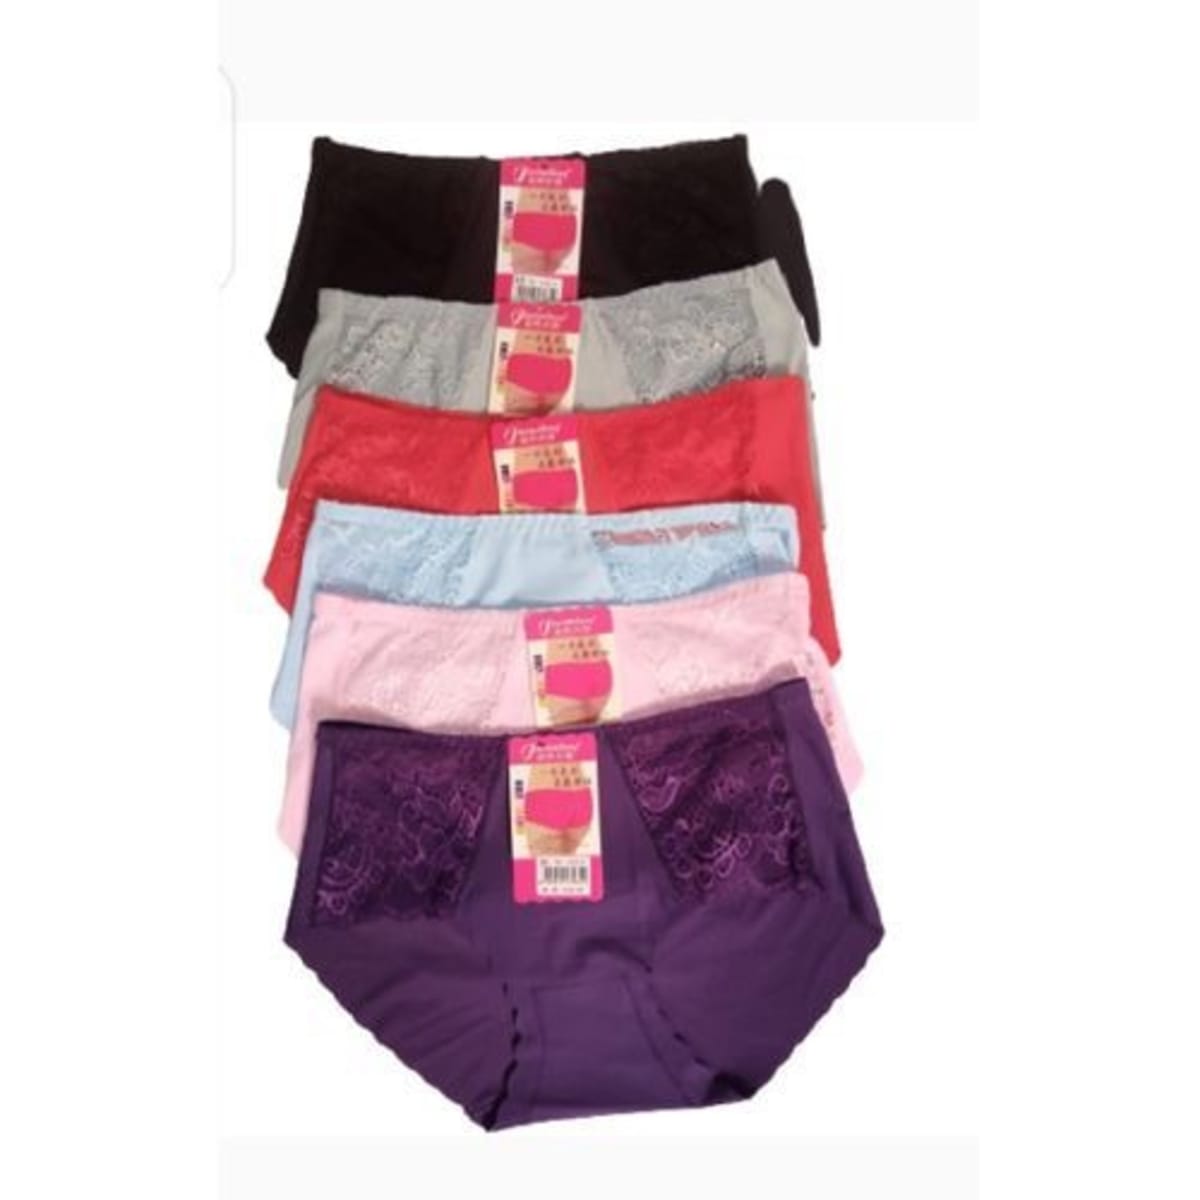 Cotton Underwear Pants For Ladies - 6 Pieces